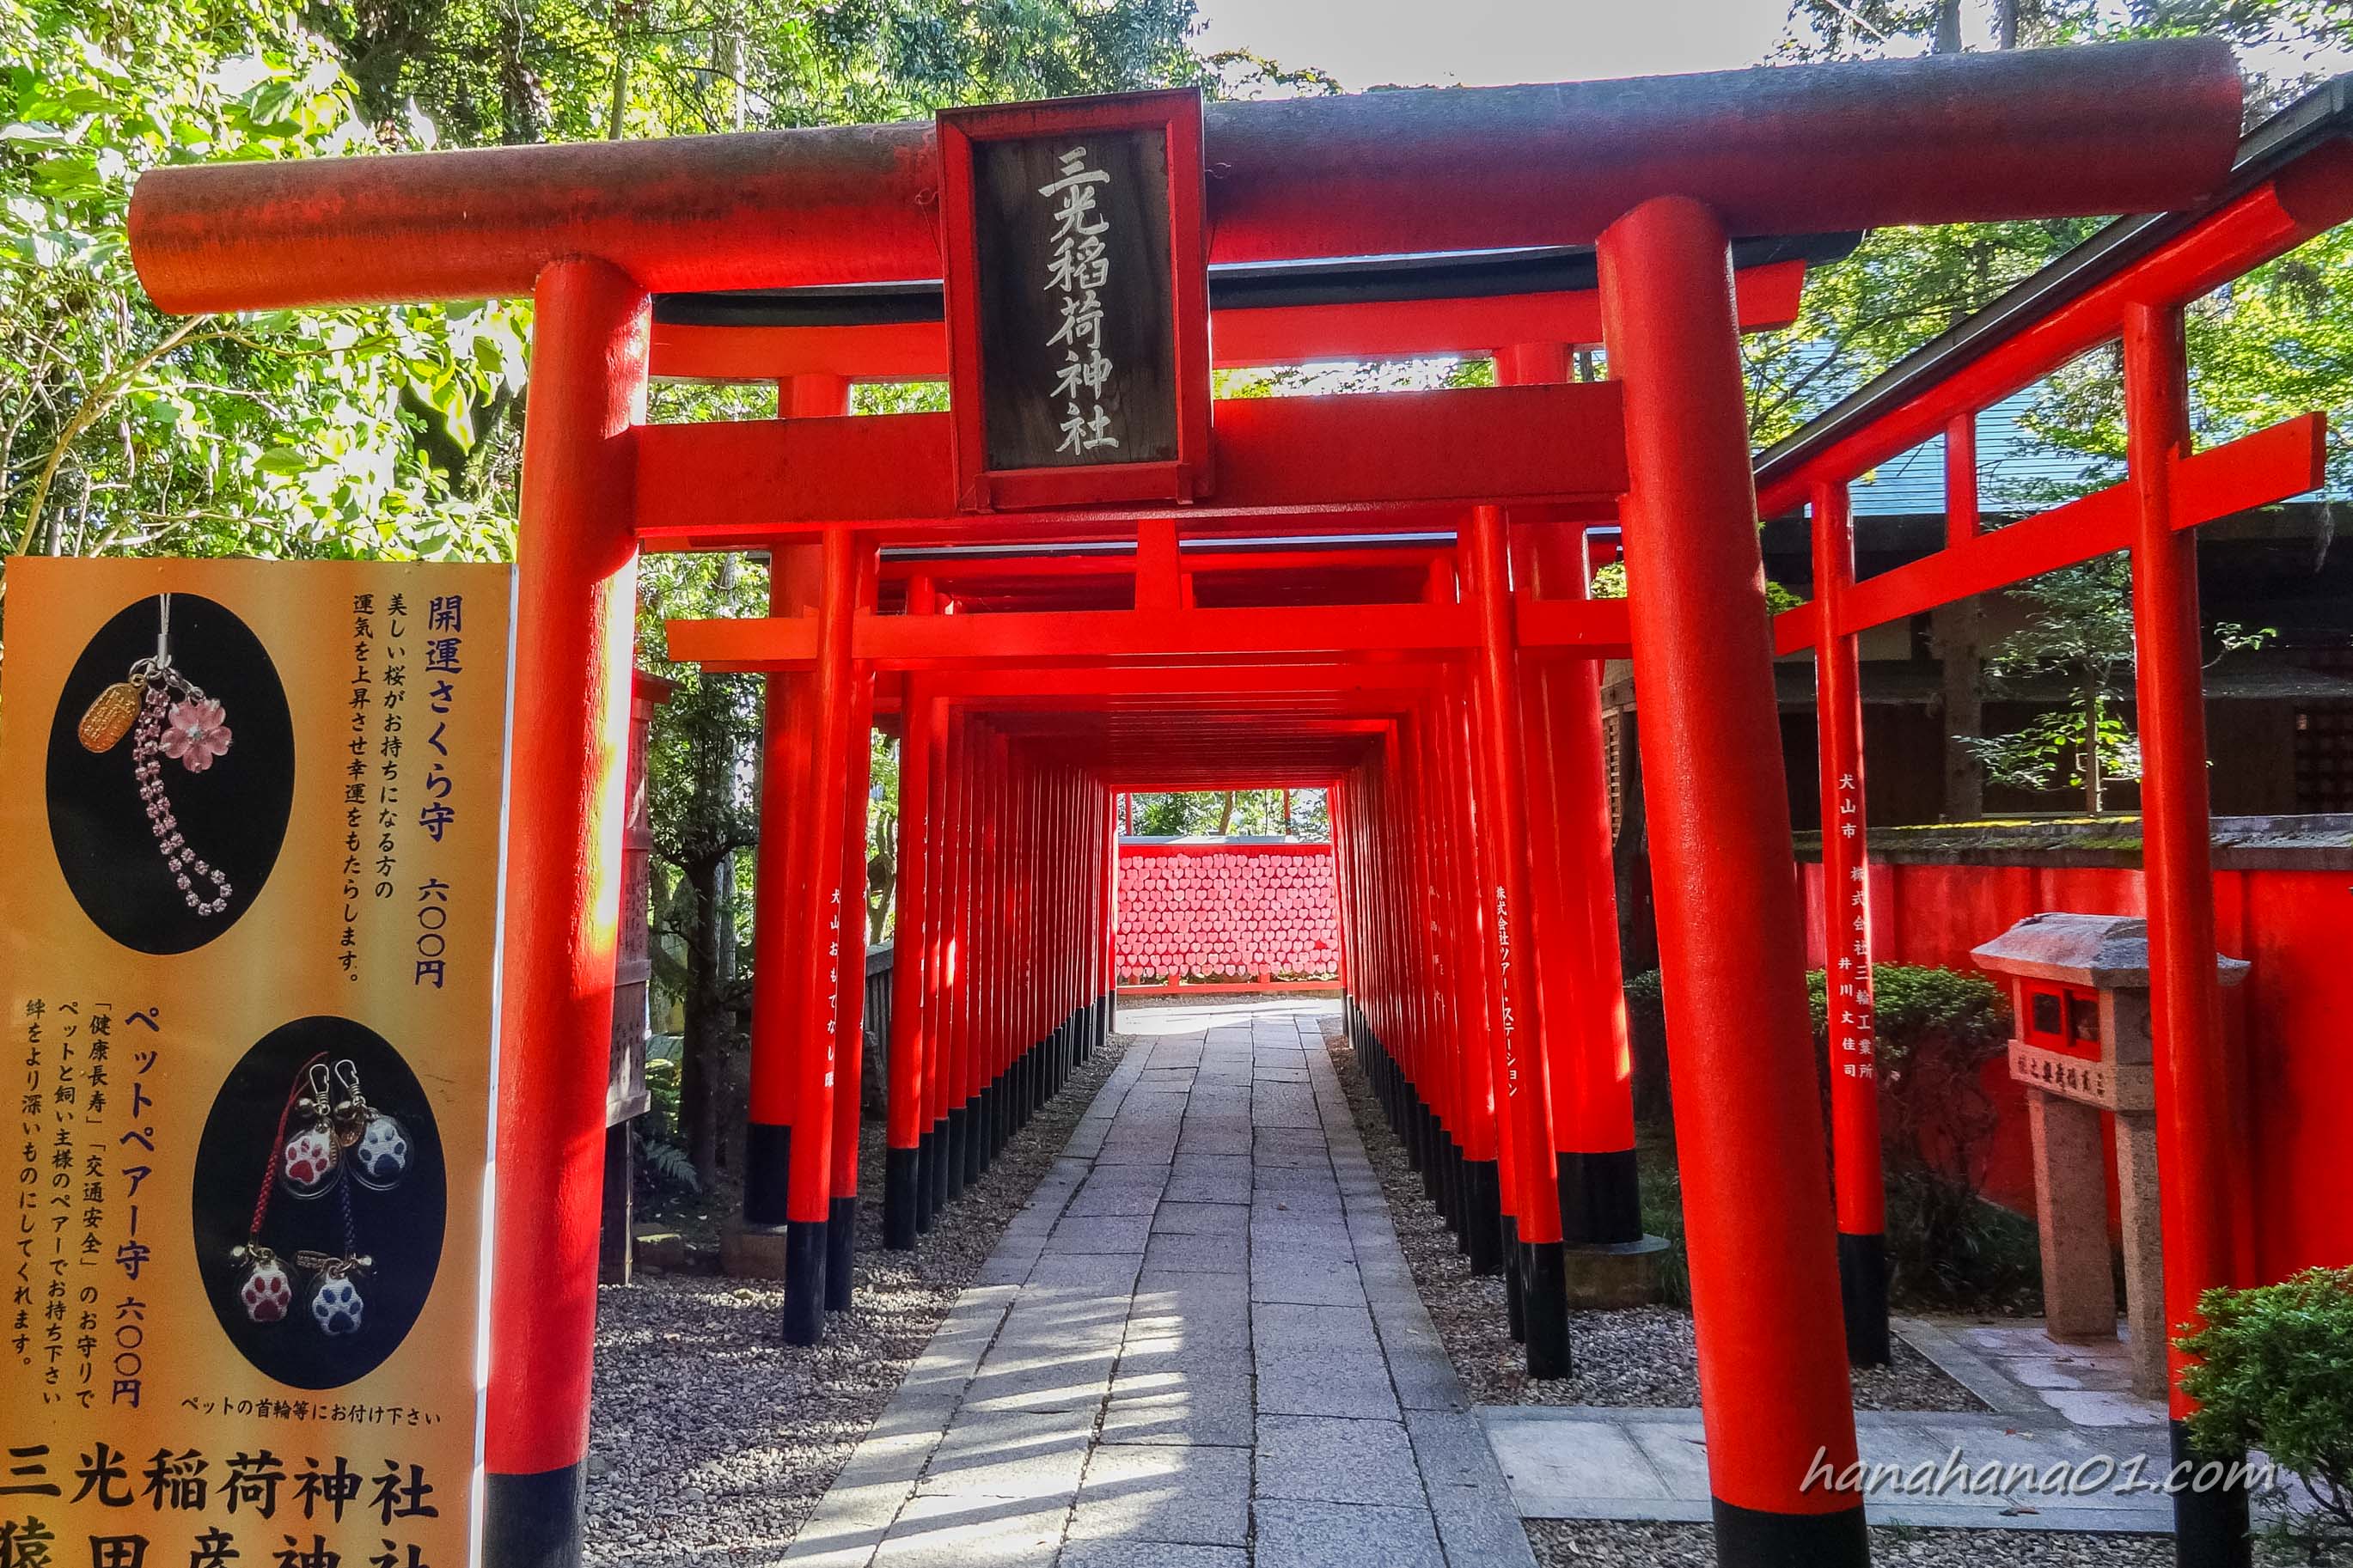 三光稲荷神社の御朱印 ハート絵馬情報 境内がピンクでインスタ映え ドライブ旅のみちしるべ